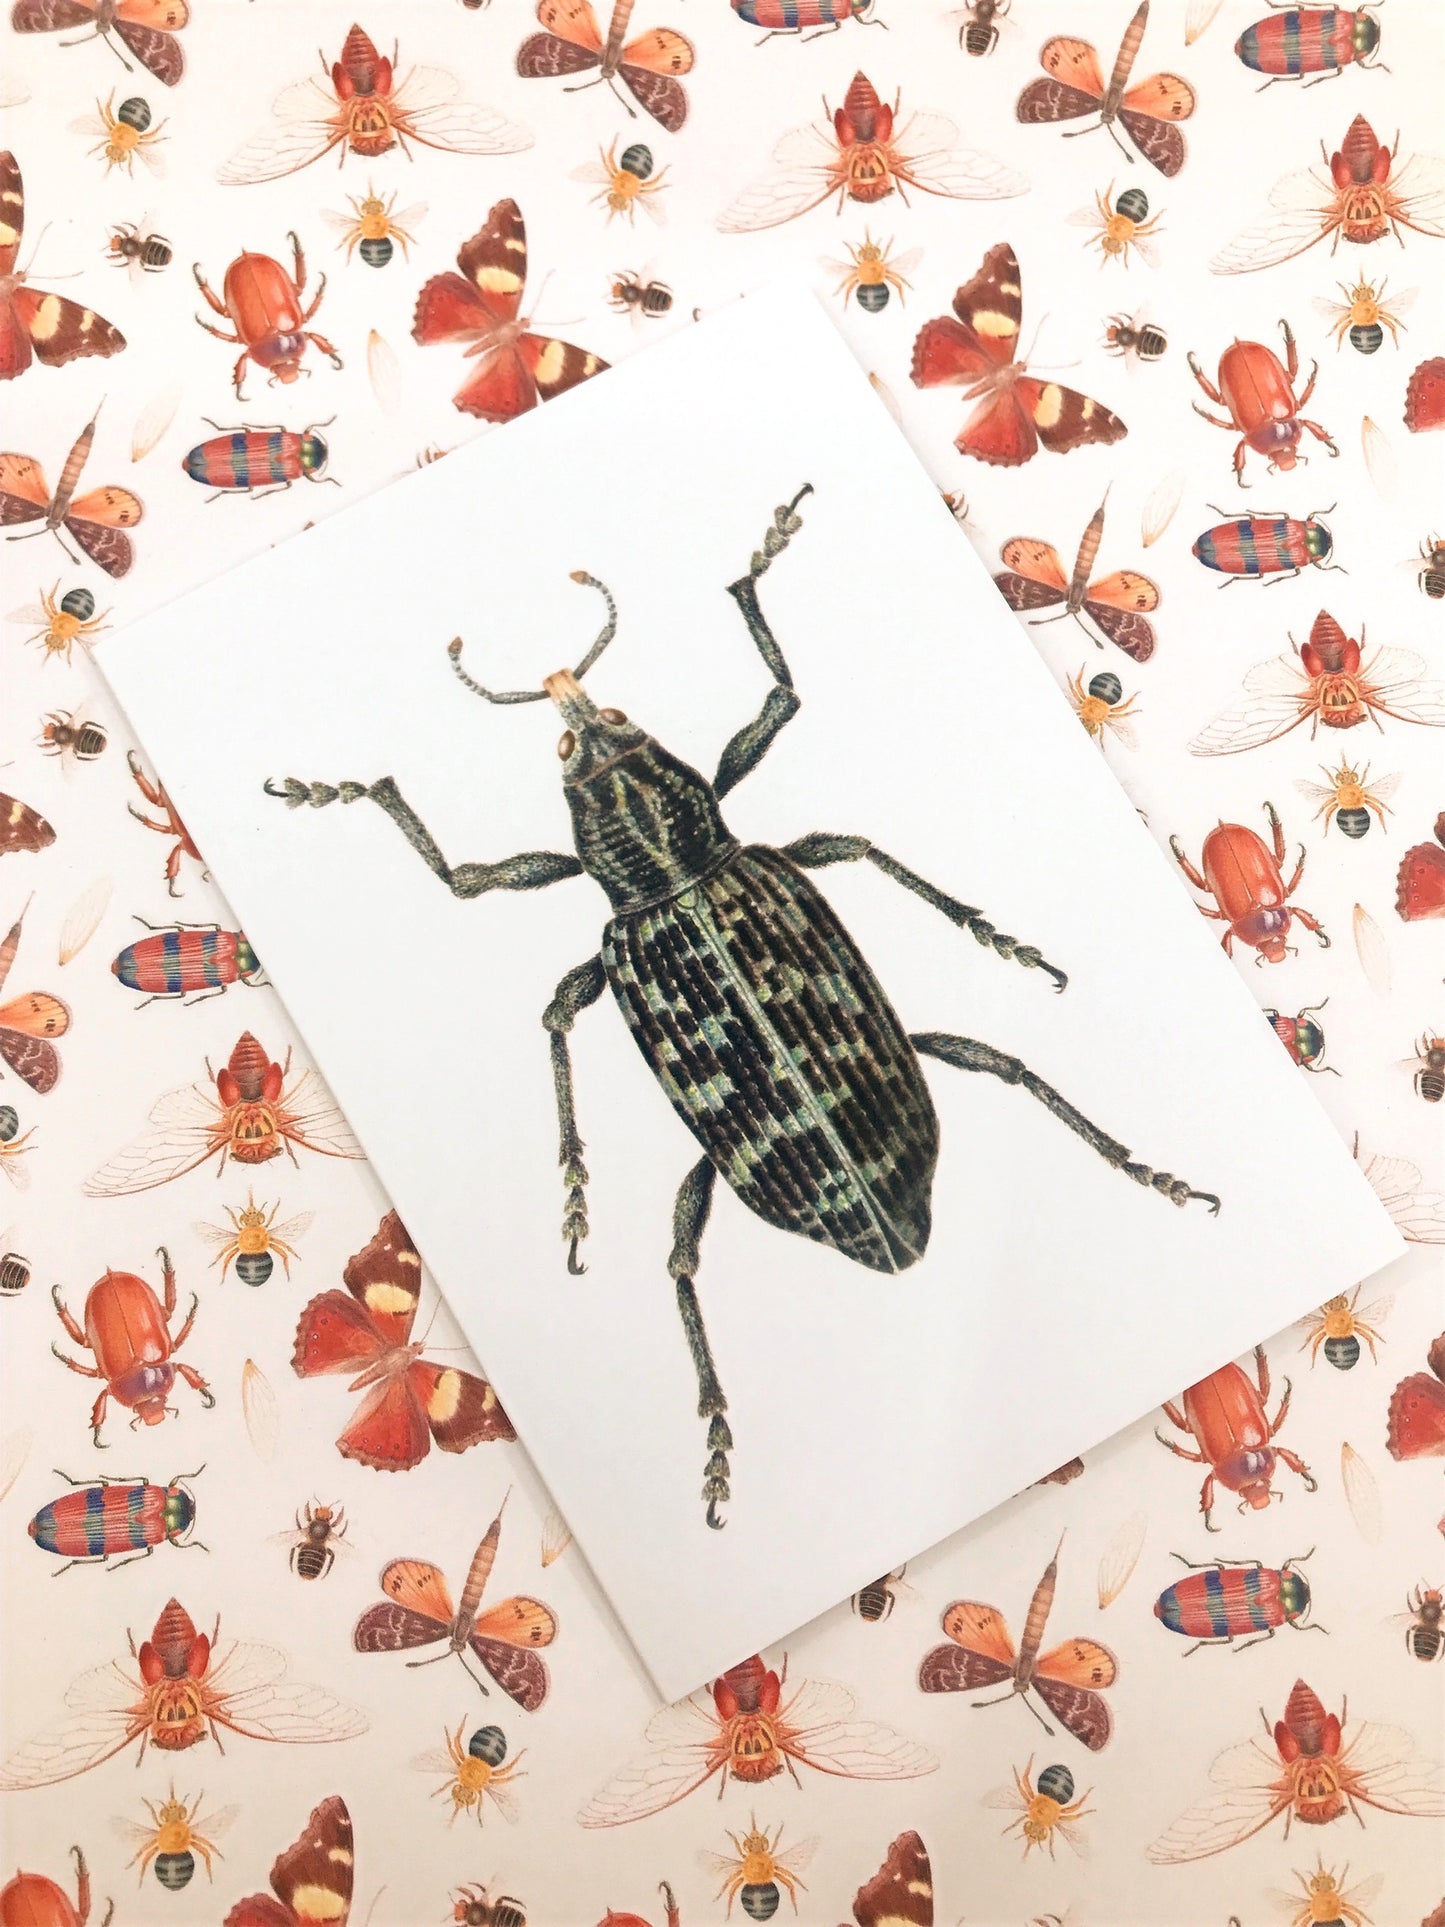 Botany Bay Weevil Greeting Card